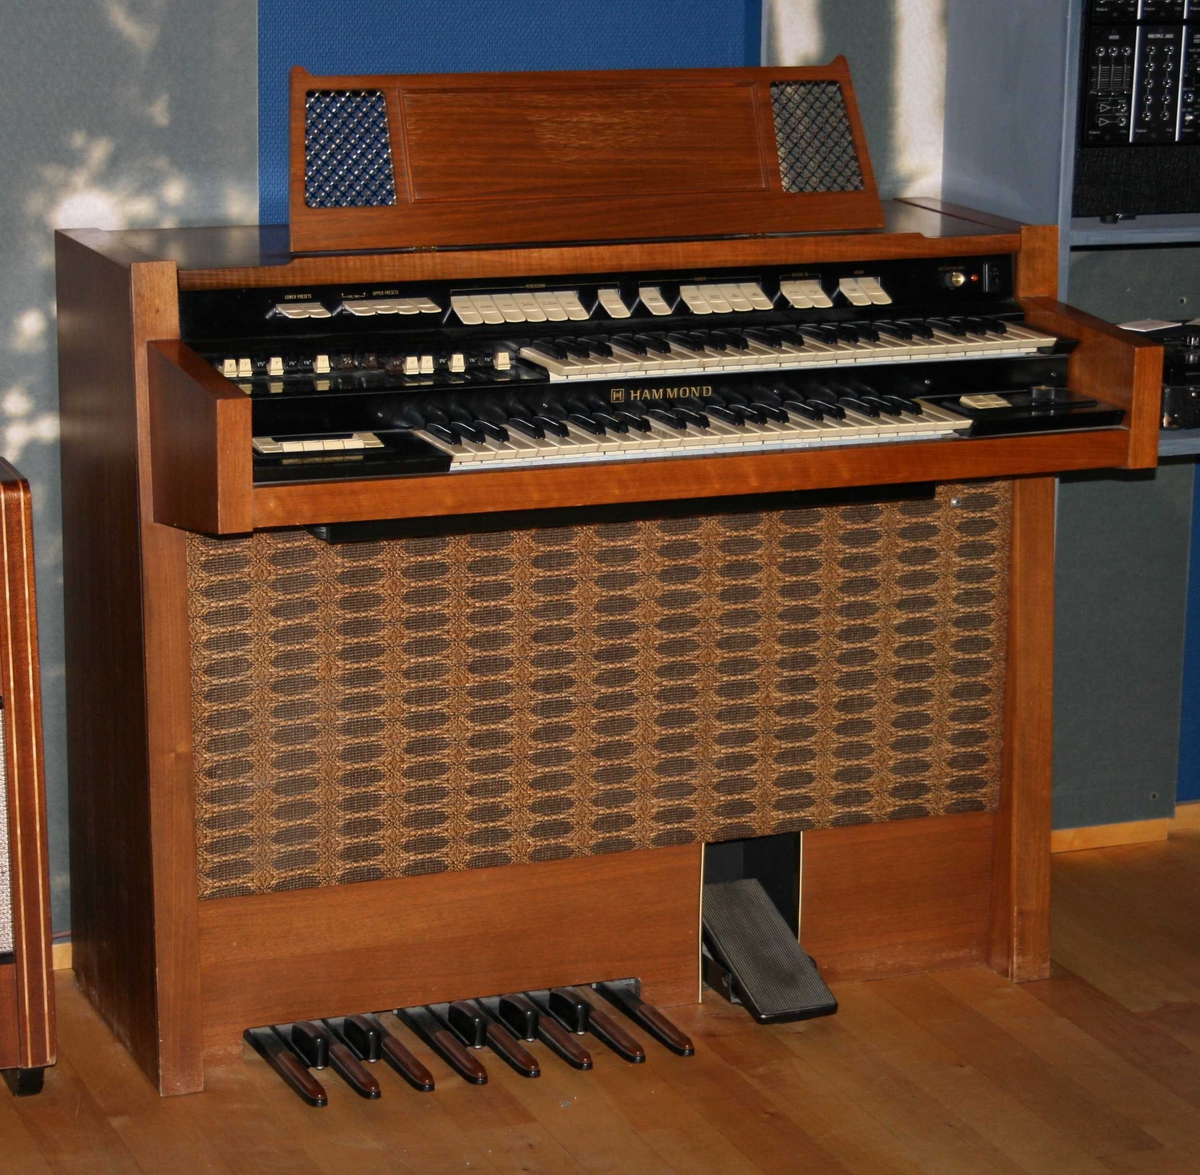 Hammondorgel - Ringve Musikkmuseum / DigitaltMuseum